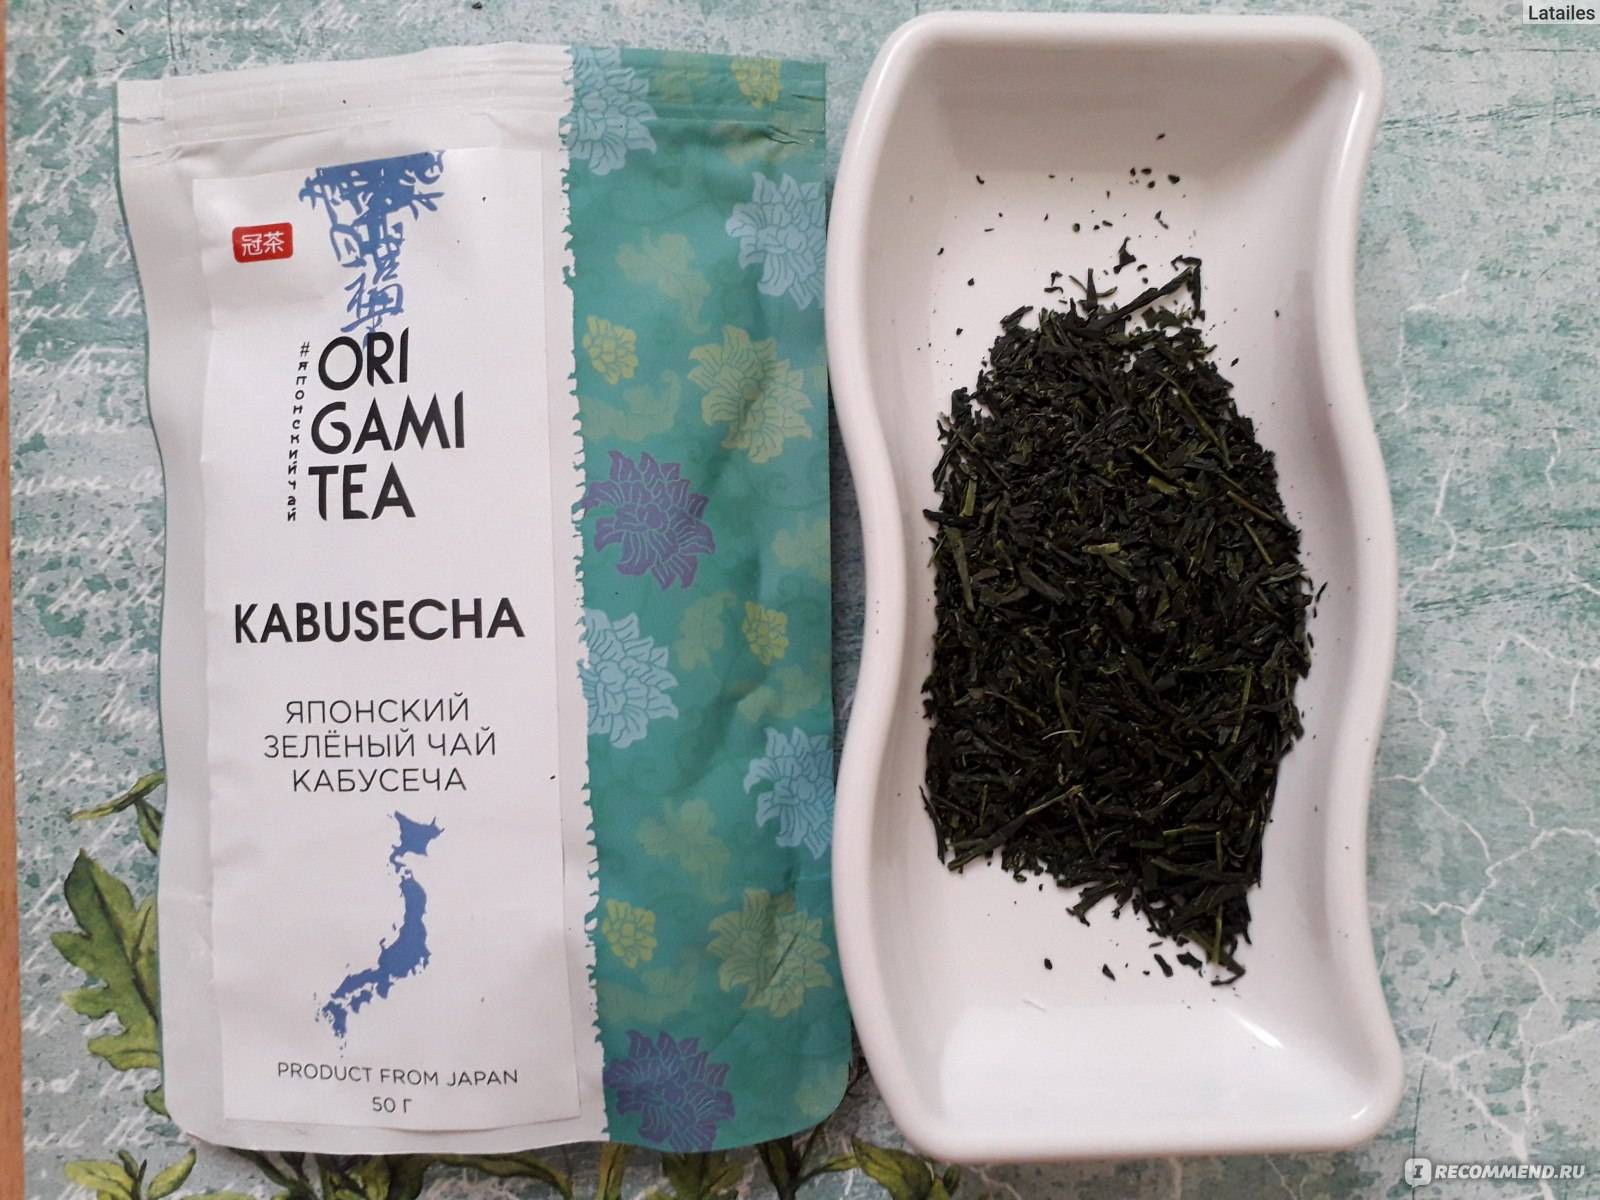 Японский чай кабусеча origami tea 50 грамм